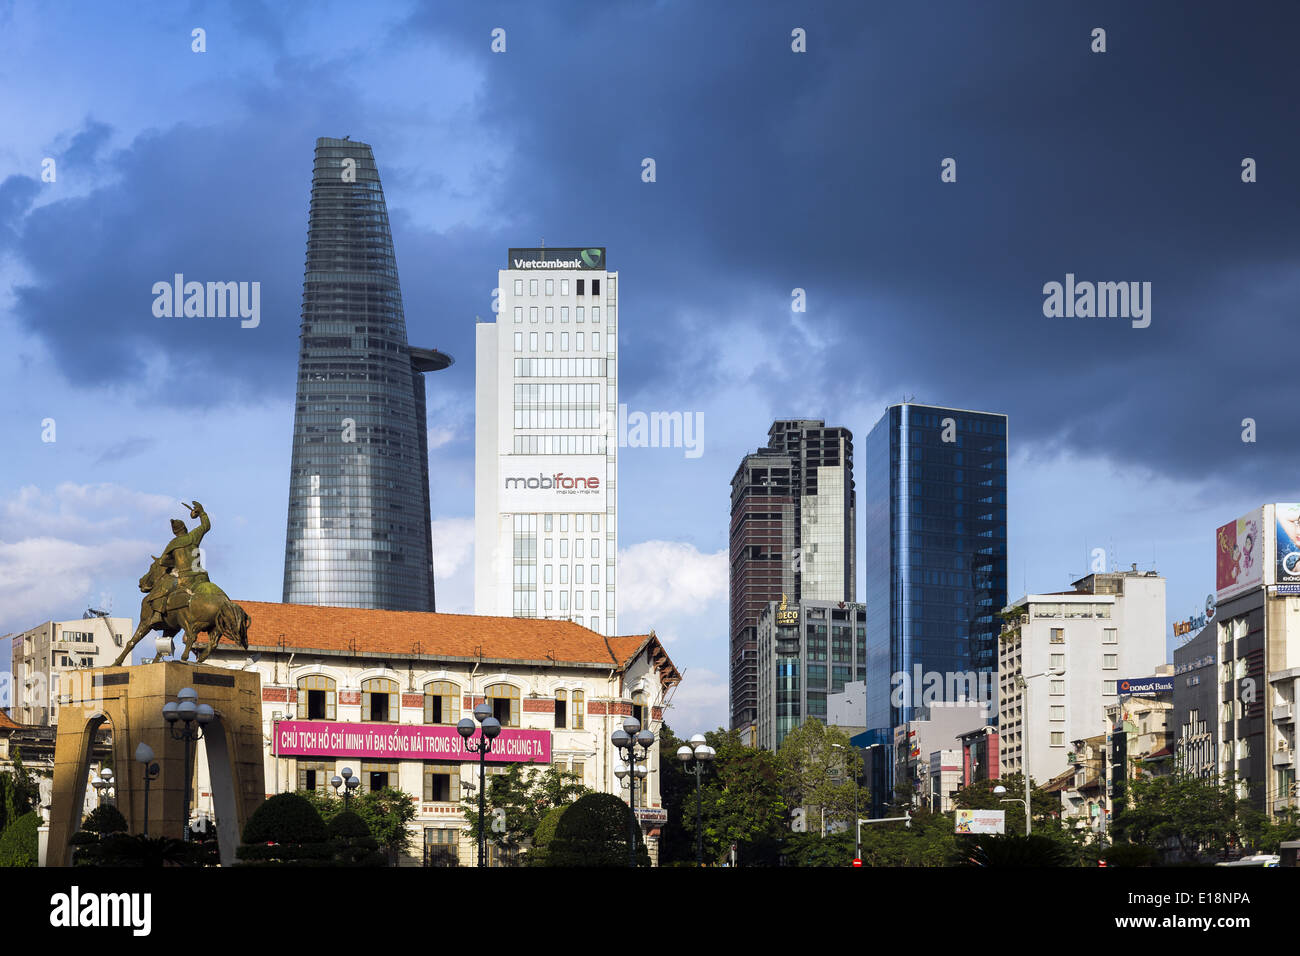 Vue depuis le rond-point Quach Thi Trang de certains des plus hauts immeubles de Ho Chi Minh Ville Banque D'Images